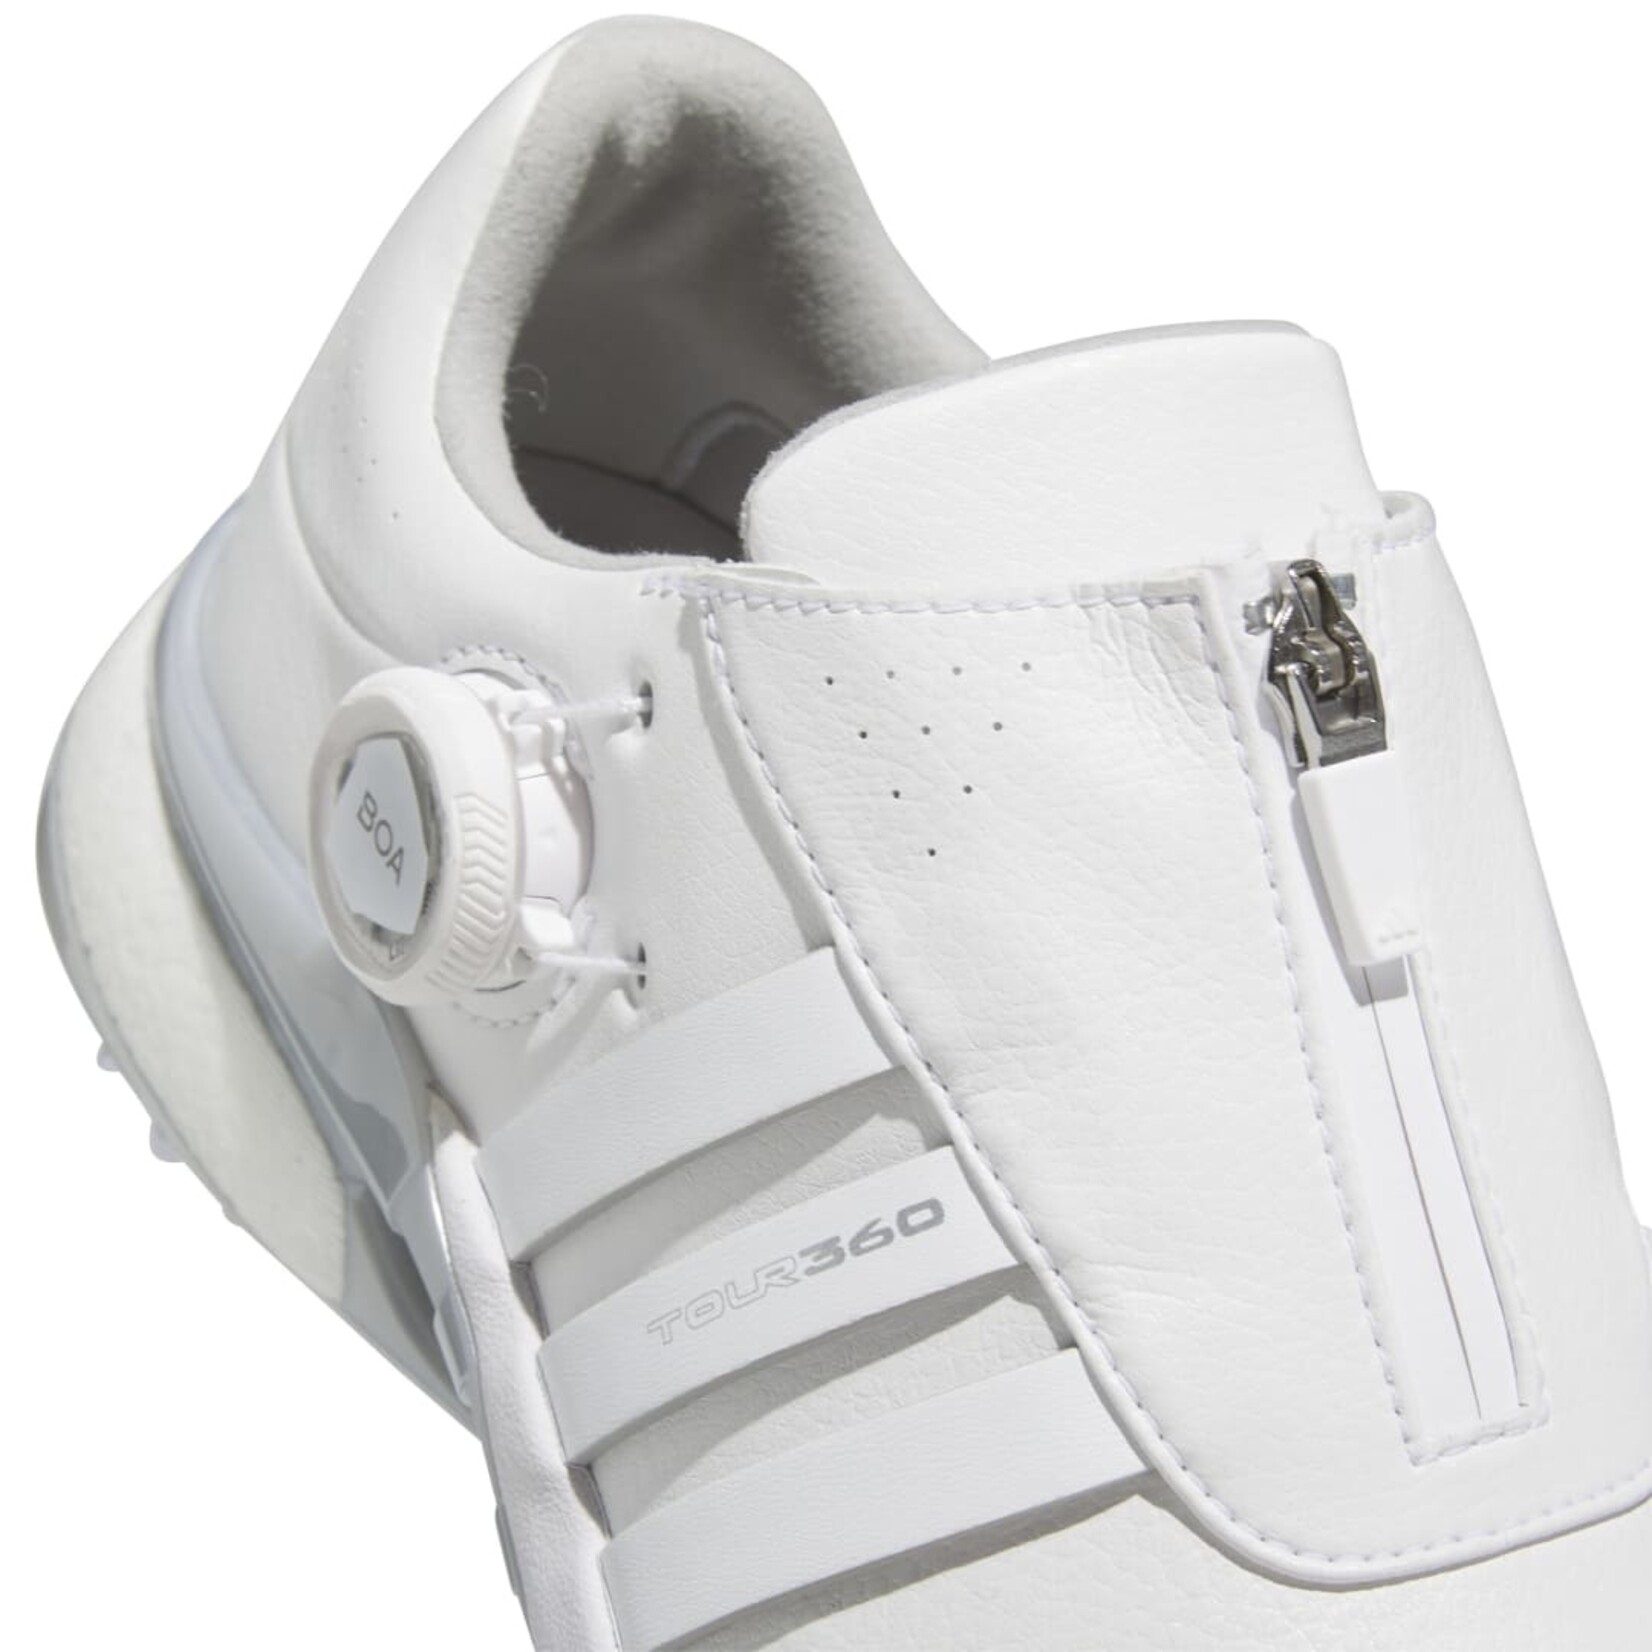 Adidas Adidas W Tour360 24 BOA - White/White/Silver Metallic